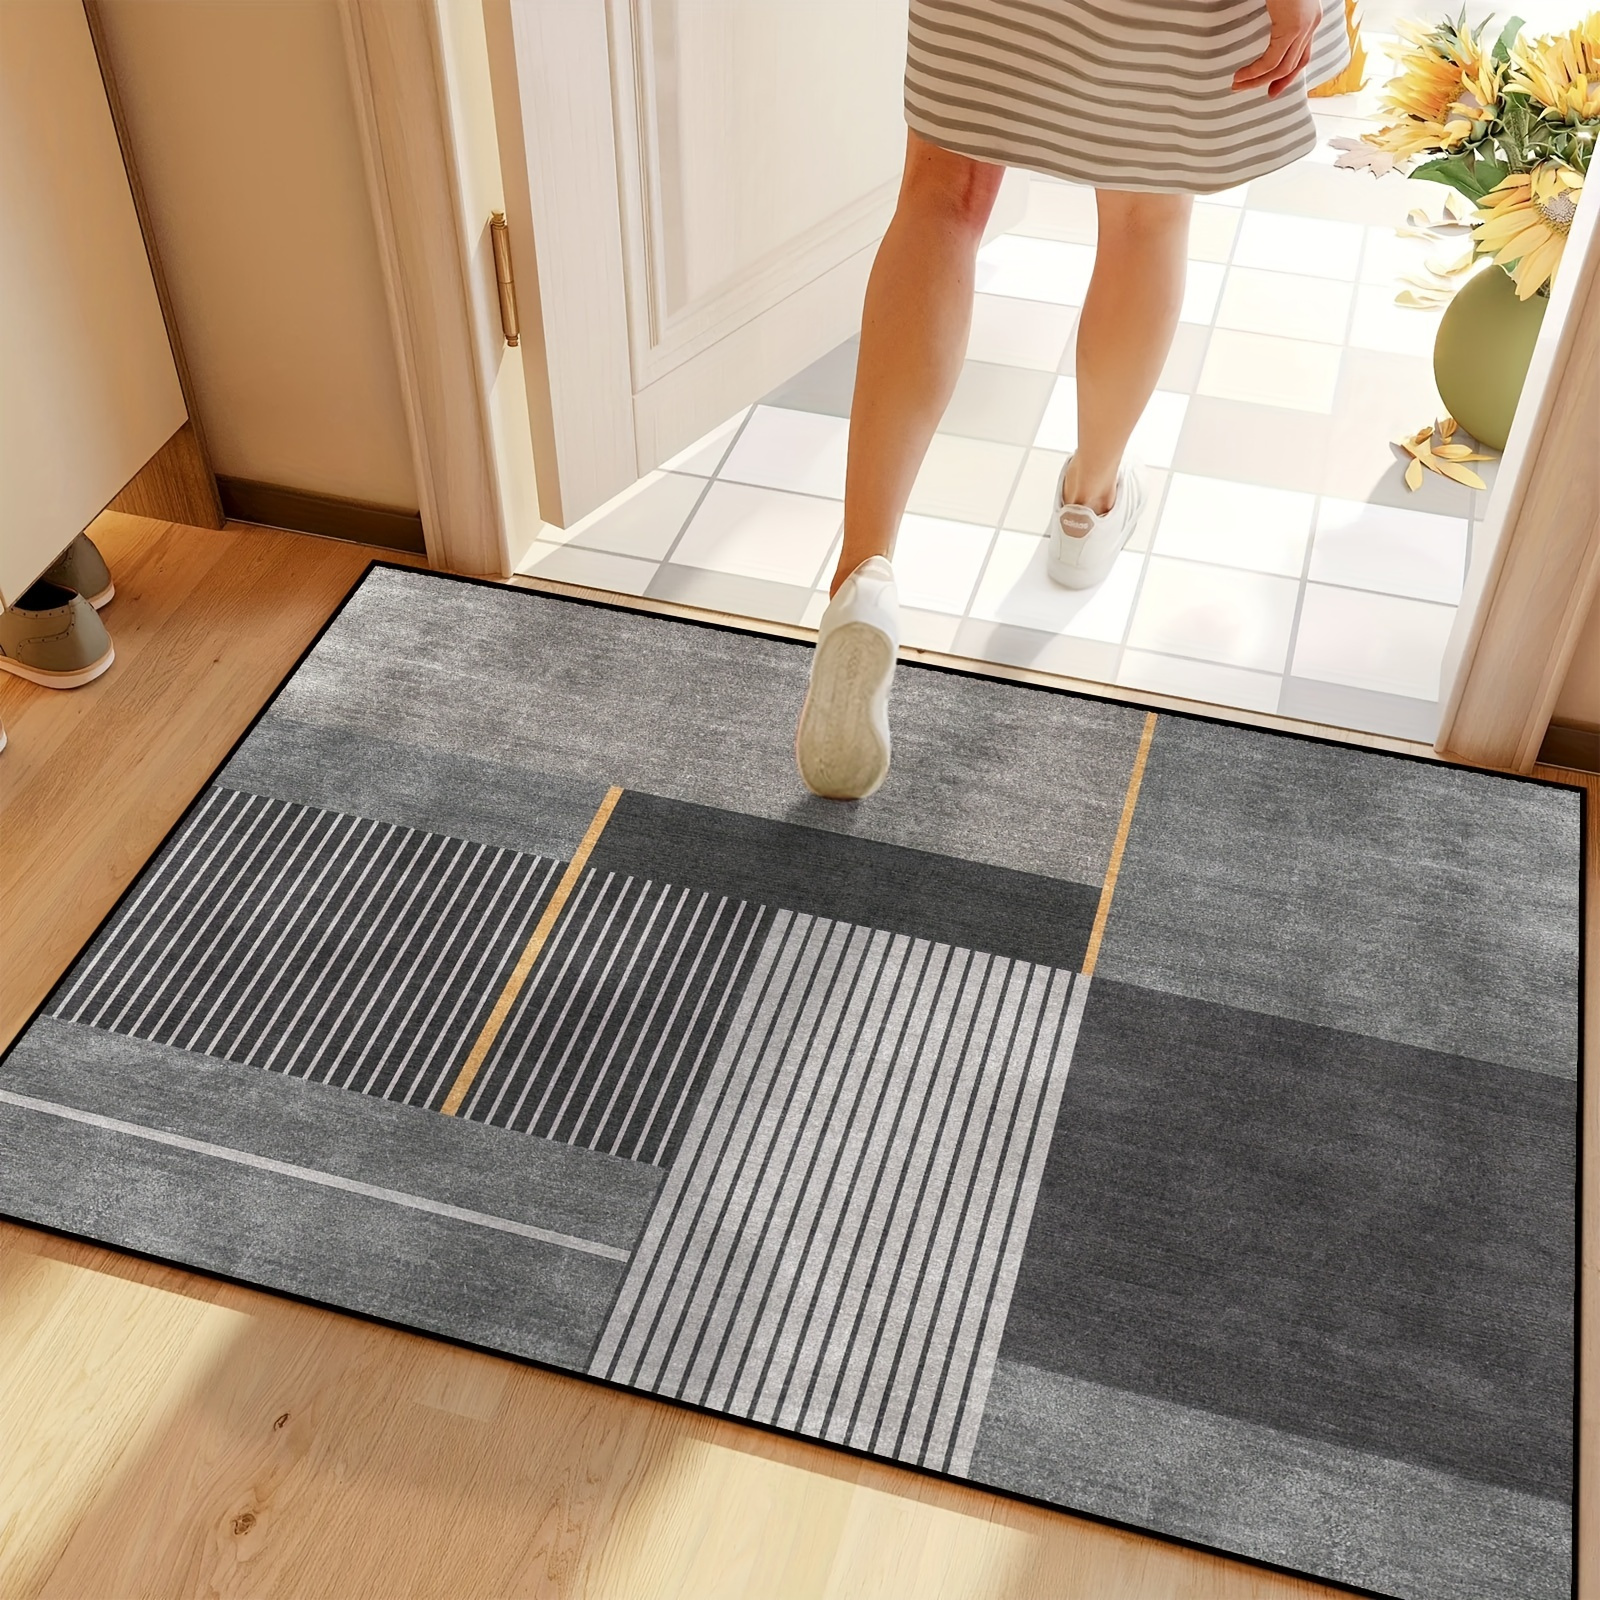 Coral Velvet Water Absorption Bathroom Floor Mat, Pebble & Embossed Doormat  For Entrance, Shoe Scraper Rug For Doorway